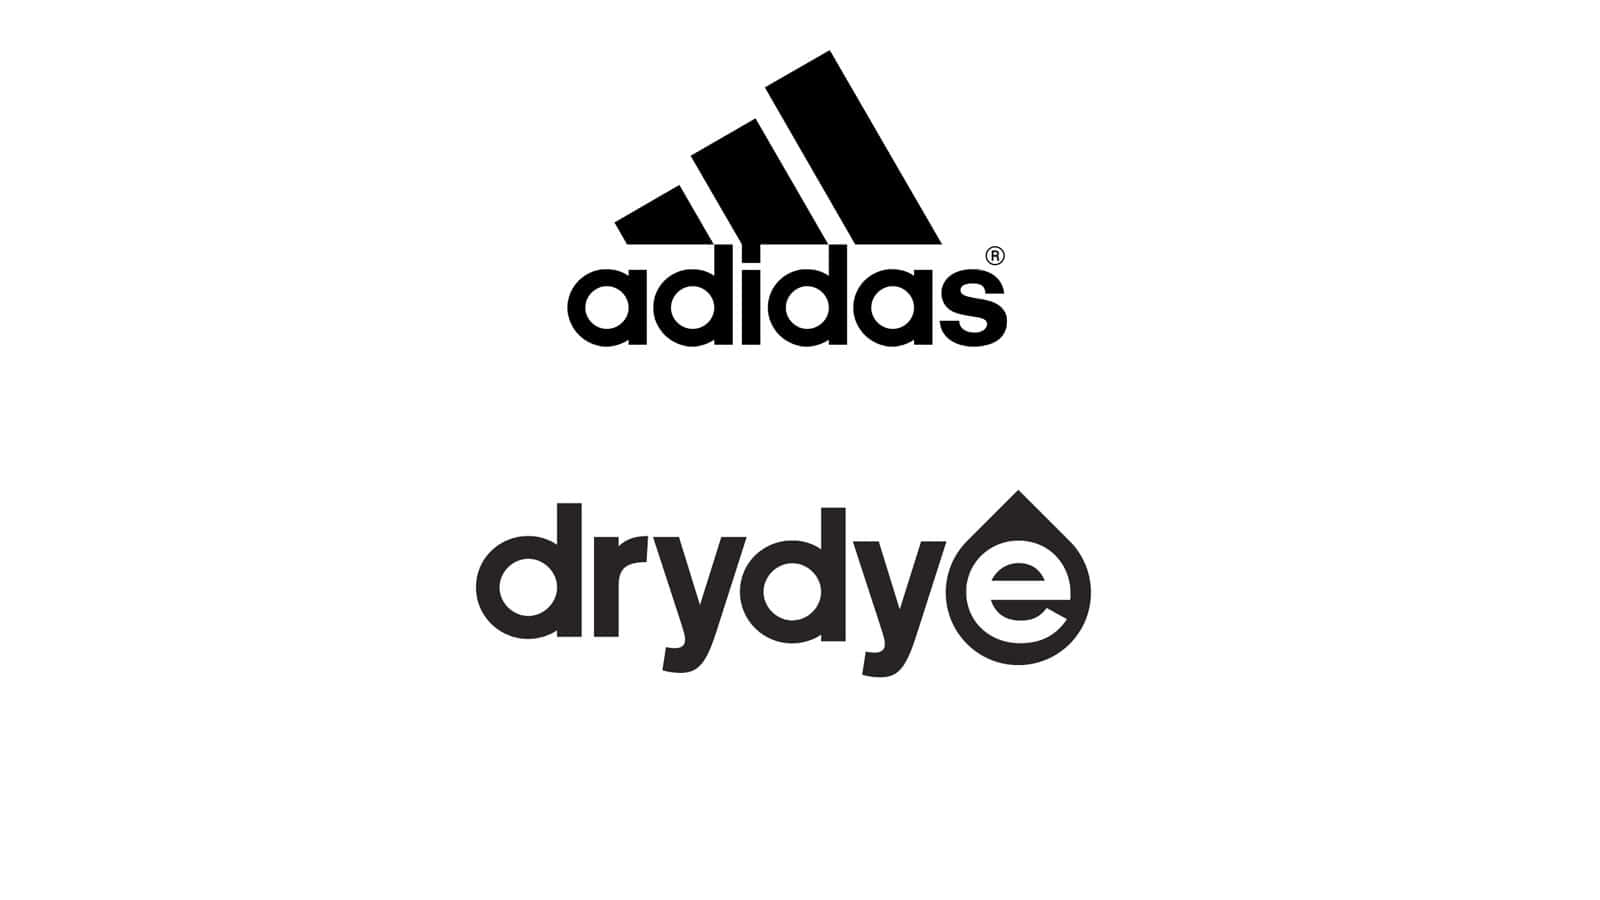 Das Adidas DryDye Material für Trikots und Hosen